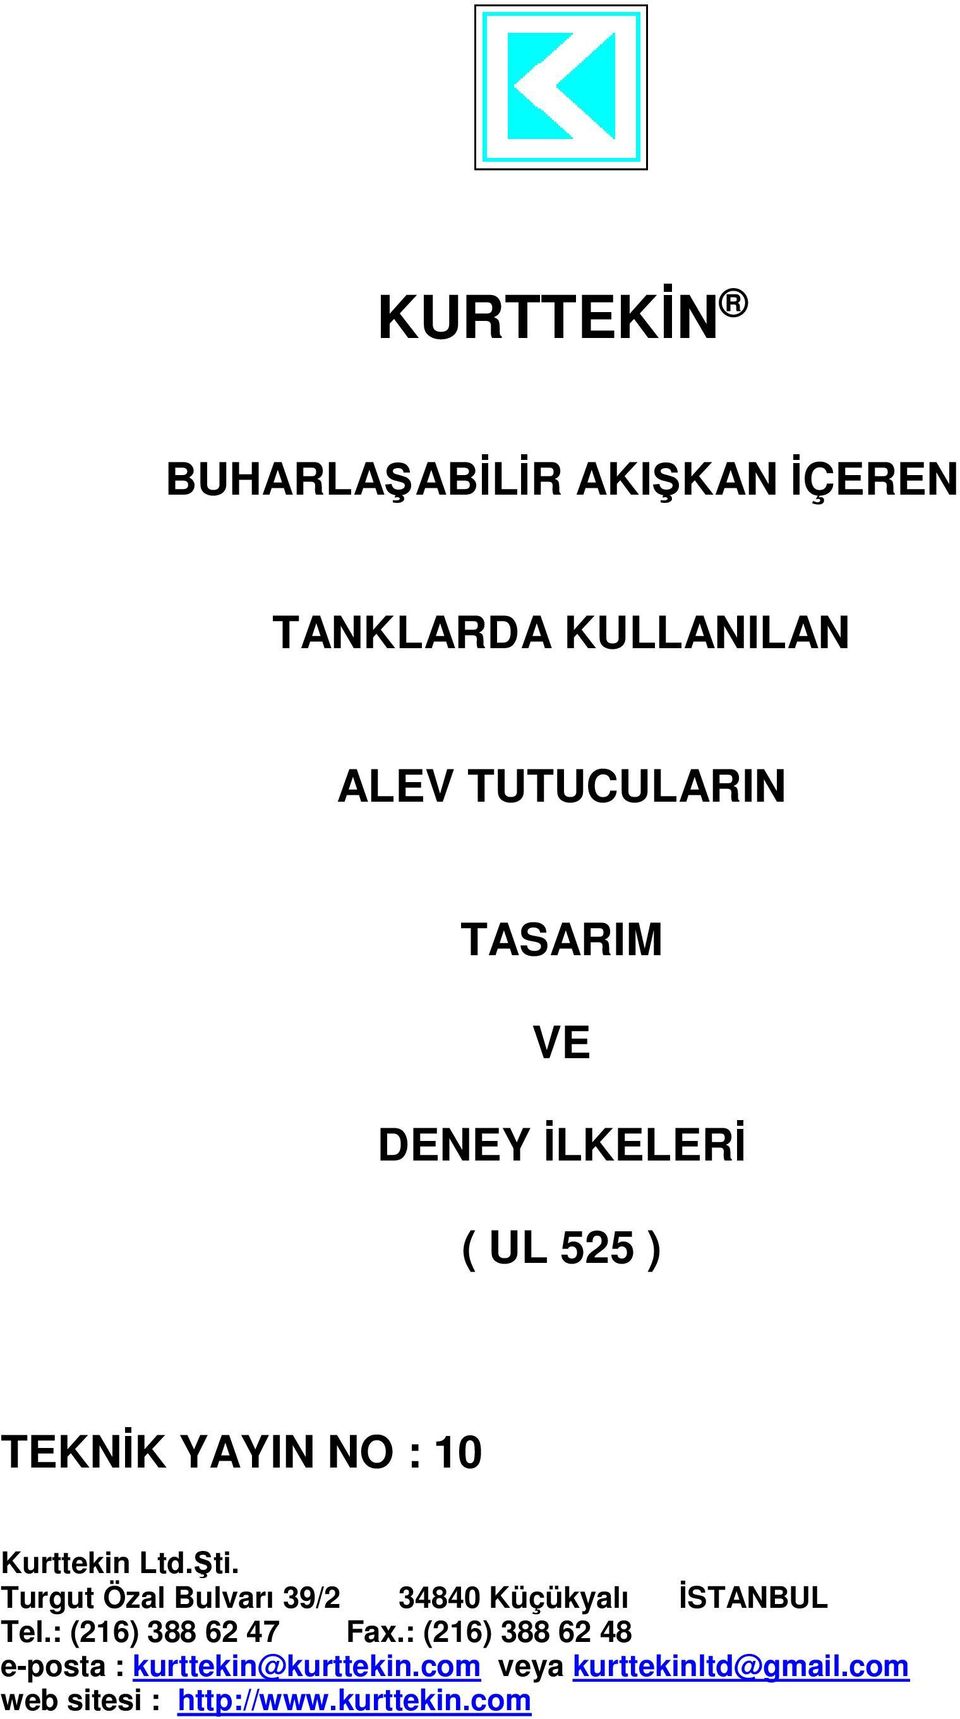 Turgut Özal Bulvarı 39/2 34840 Küçükyalı İSTANBUL Tel.: (216) 388 62 47 Fax.